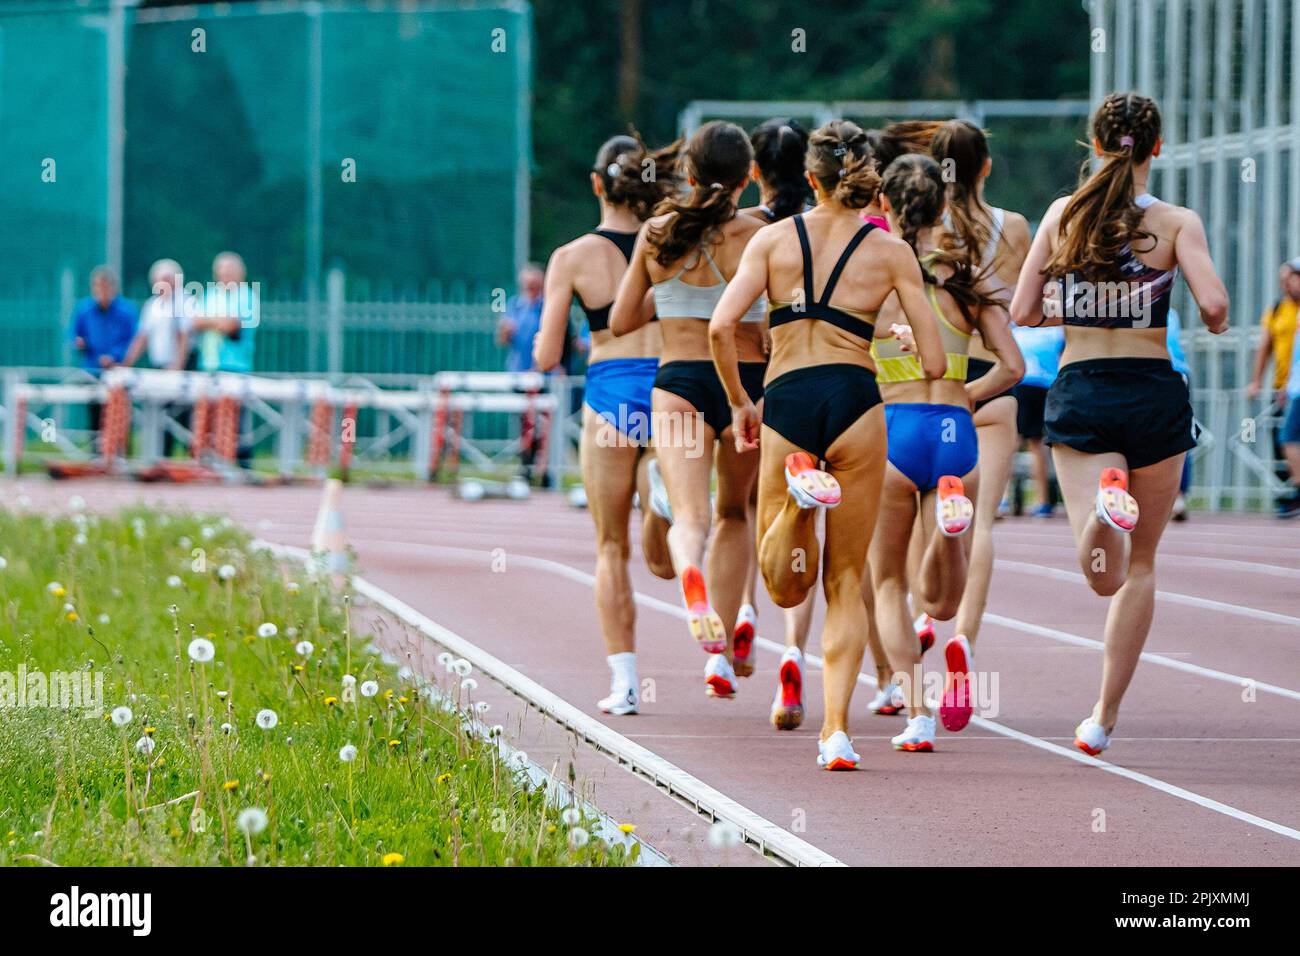 back group femminile runner corsa a media distanza, campionati estivi di atletica allo stadio, pista da jogging femminile Foto Stock